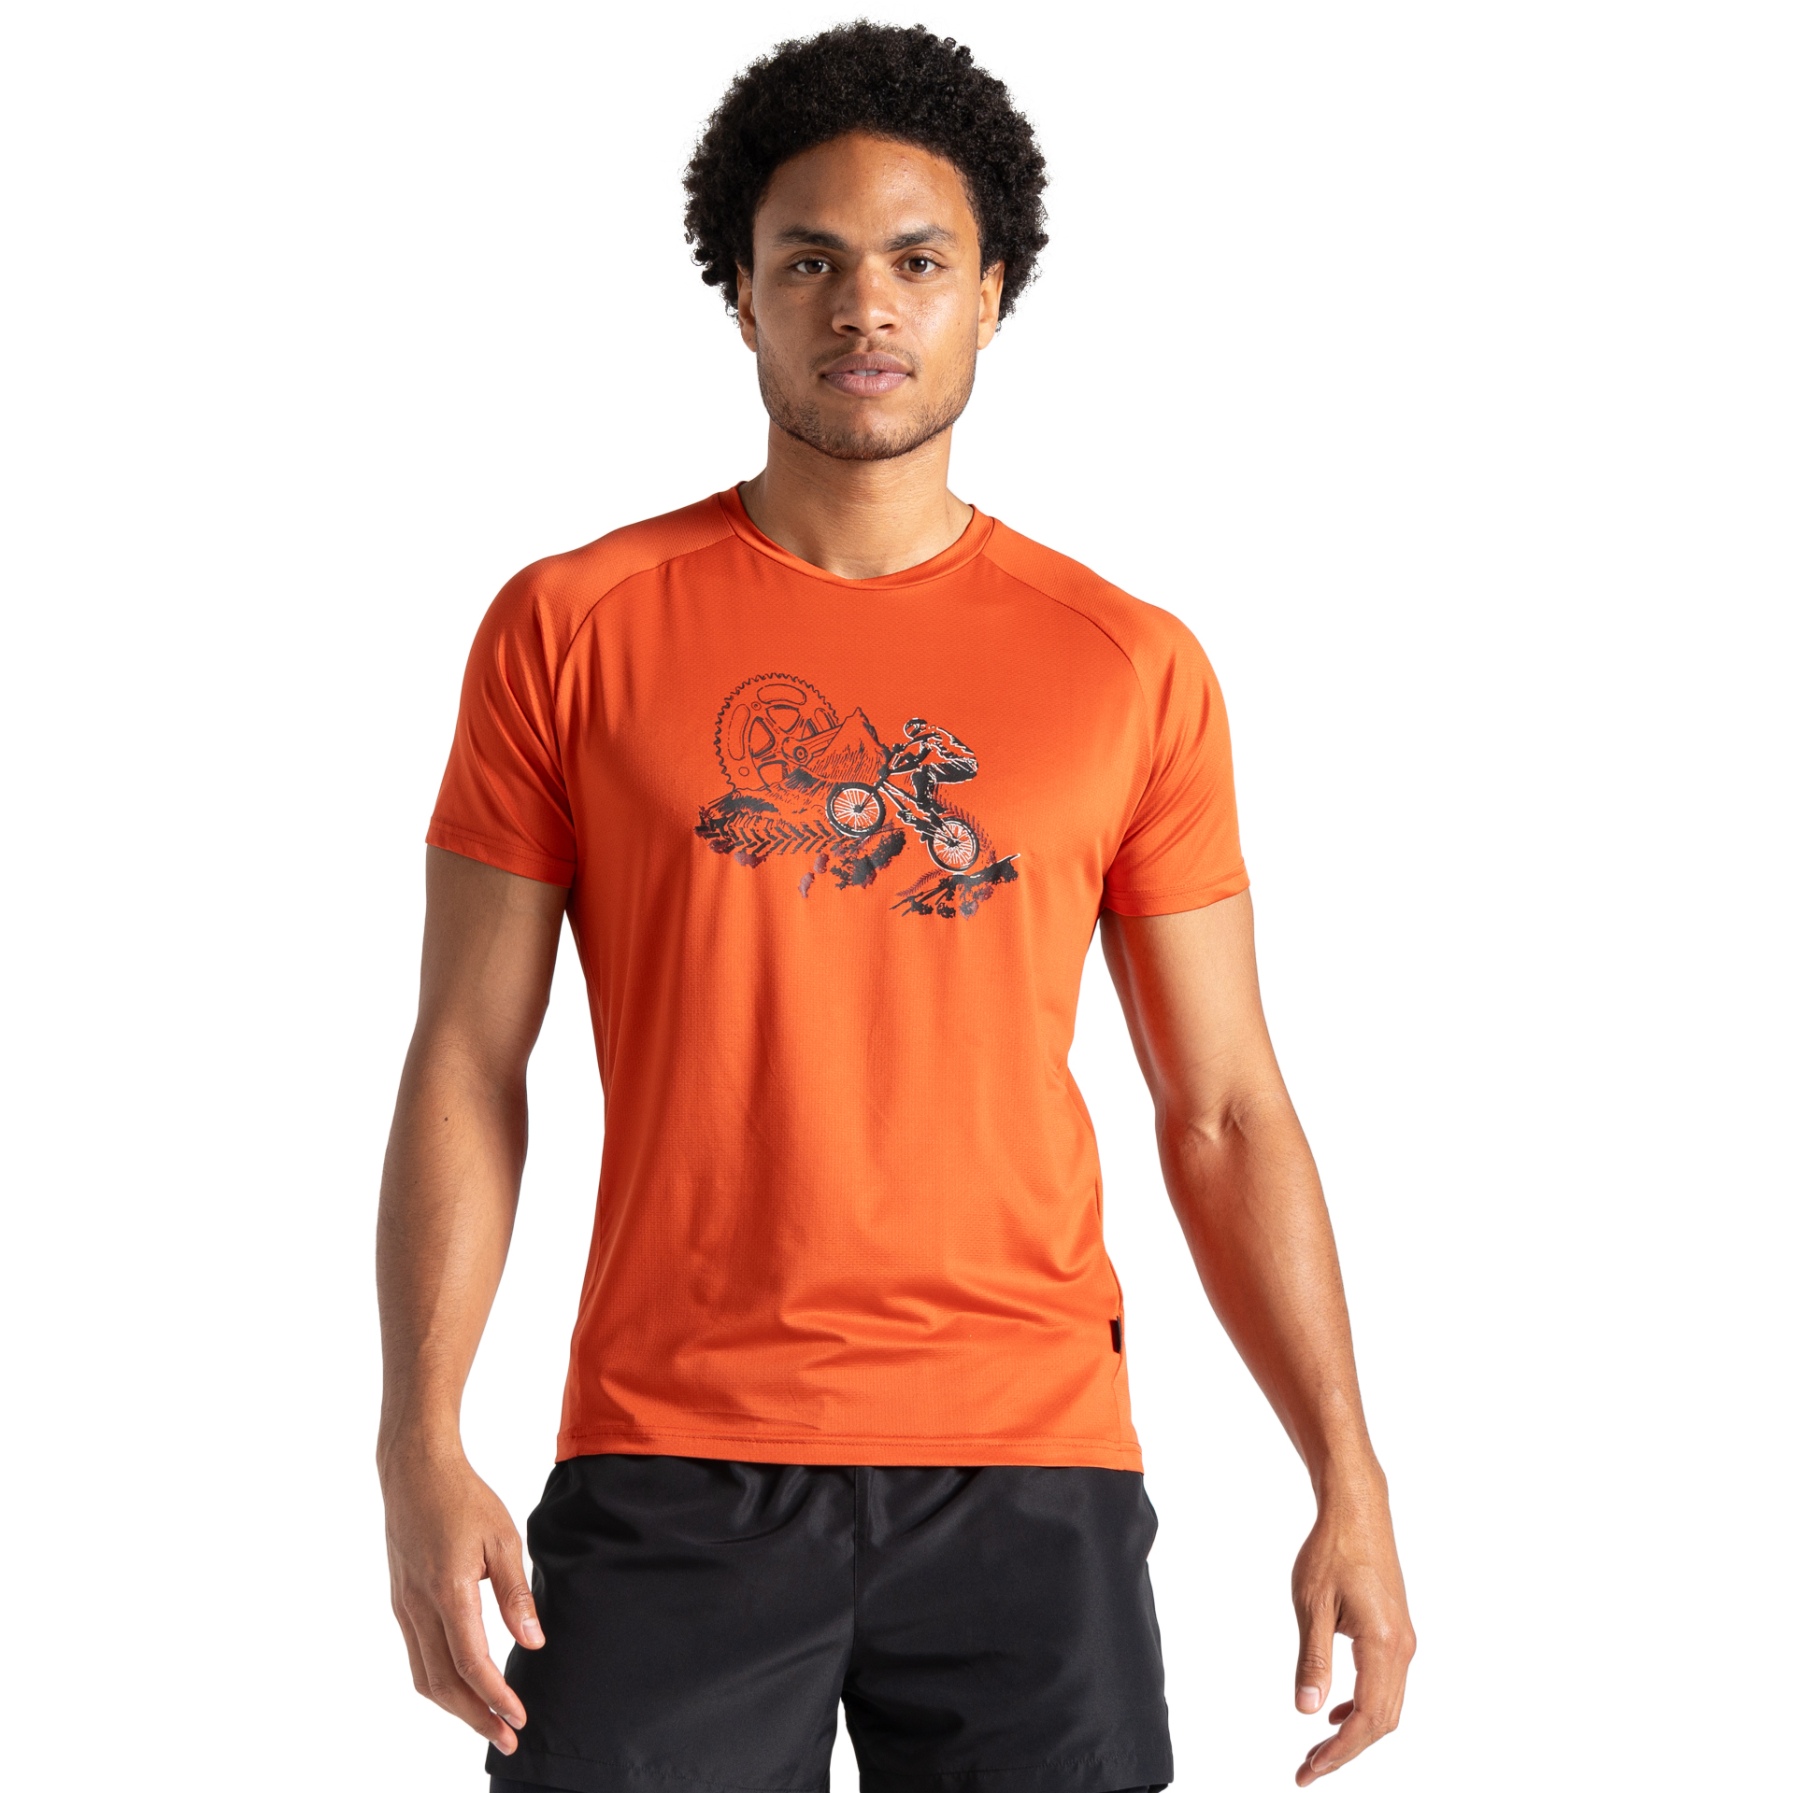 Produktbild von Dare 2b Tech T-Shirt Herren - DAK Cinnamon